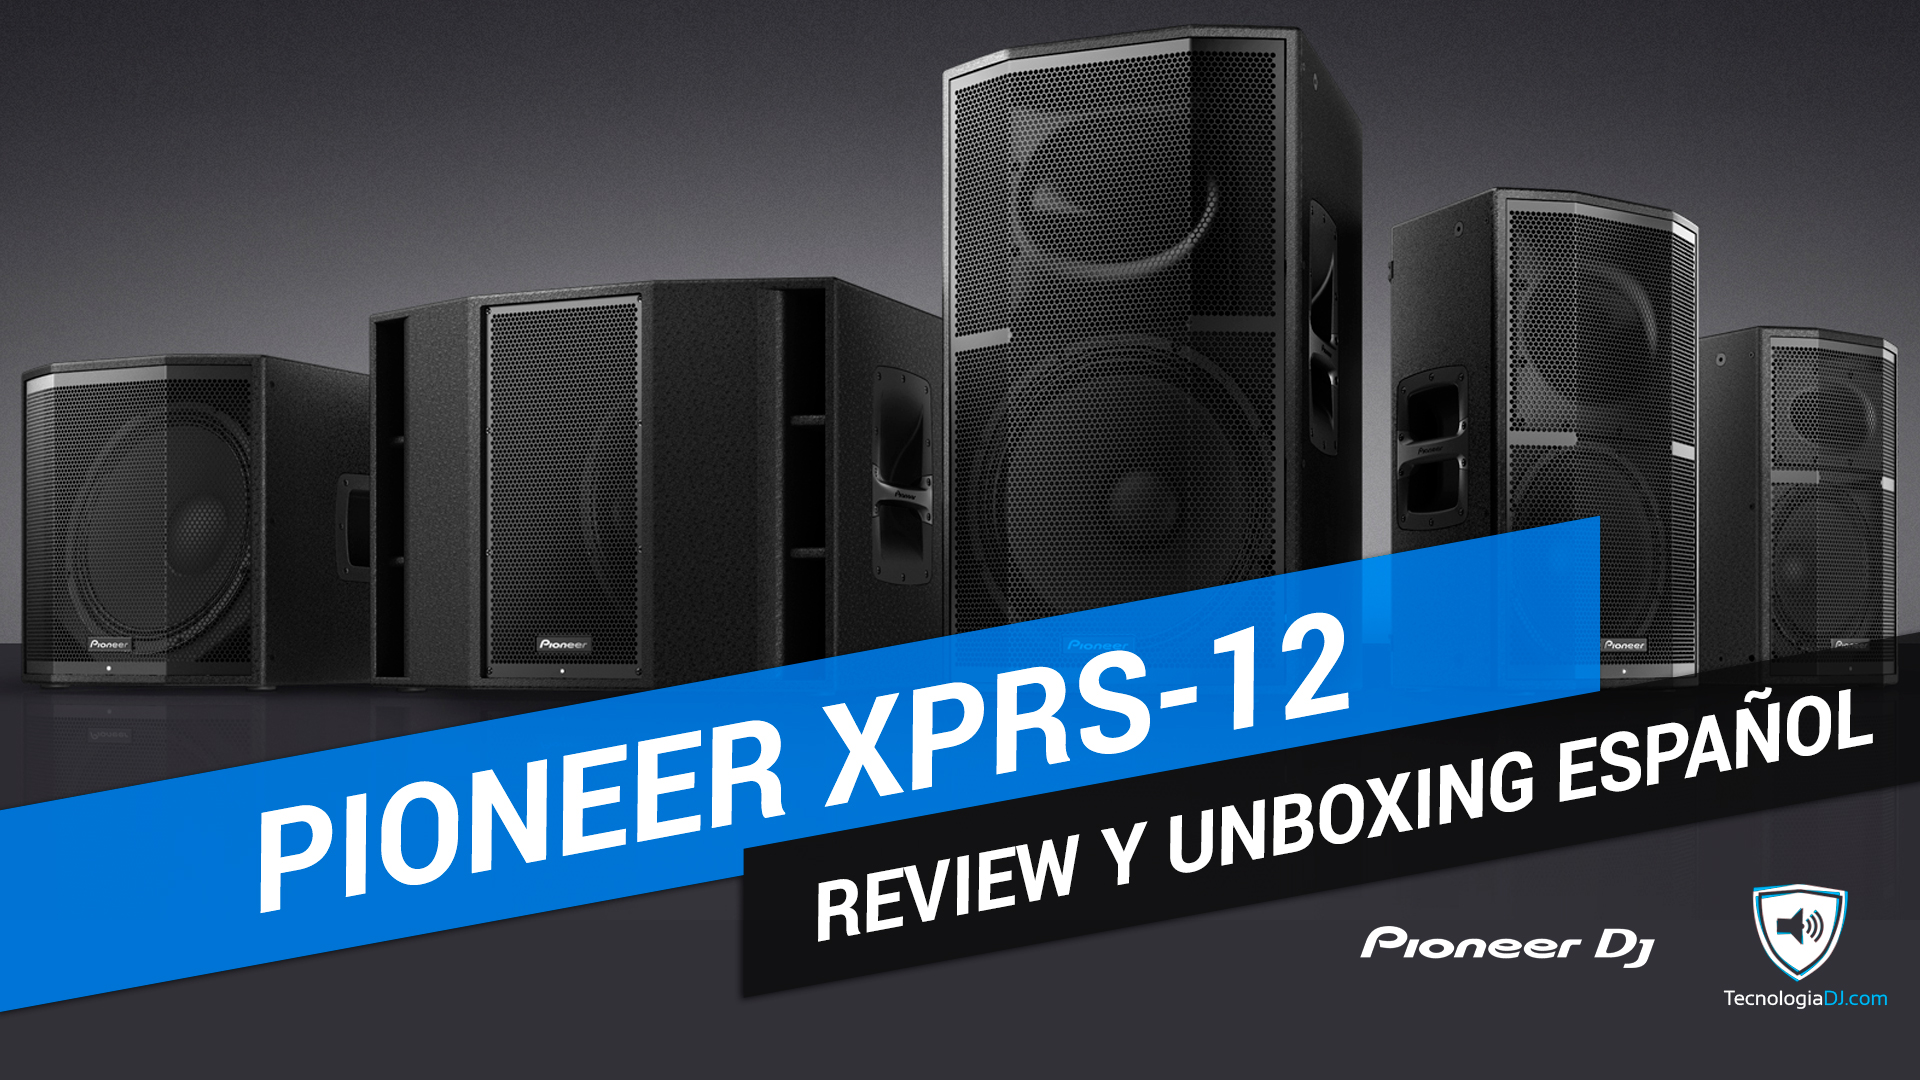 Review y unboxing en español altavoces Pioneer XPRS-12